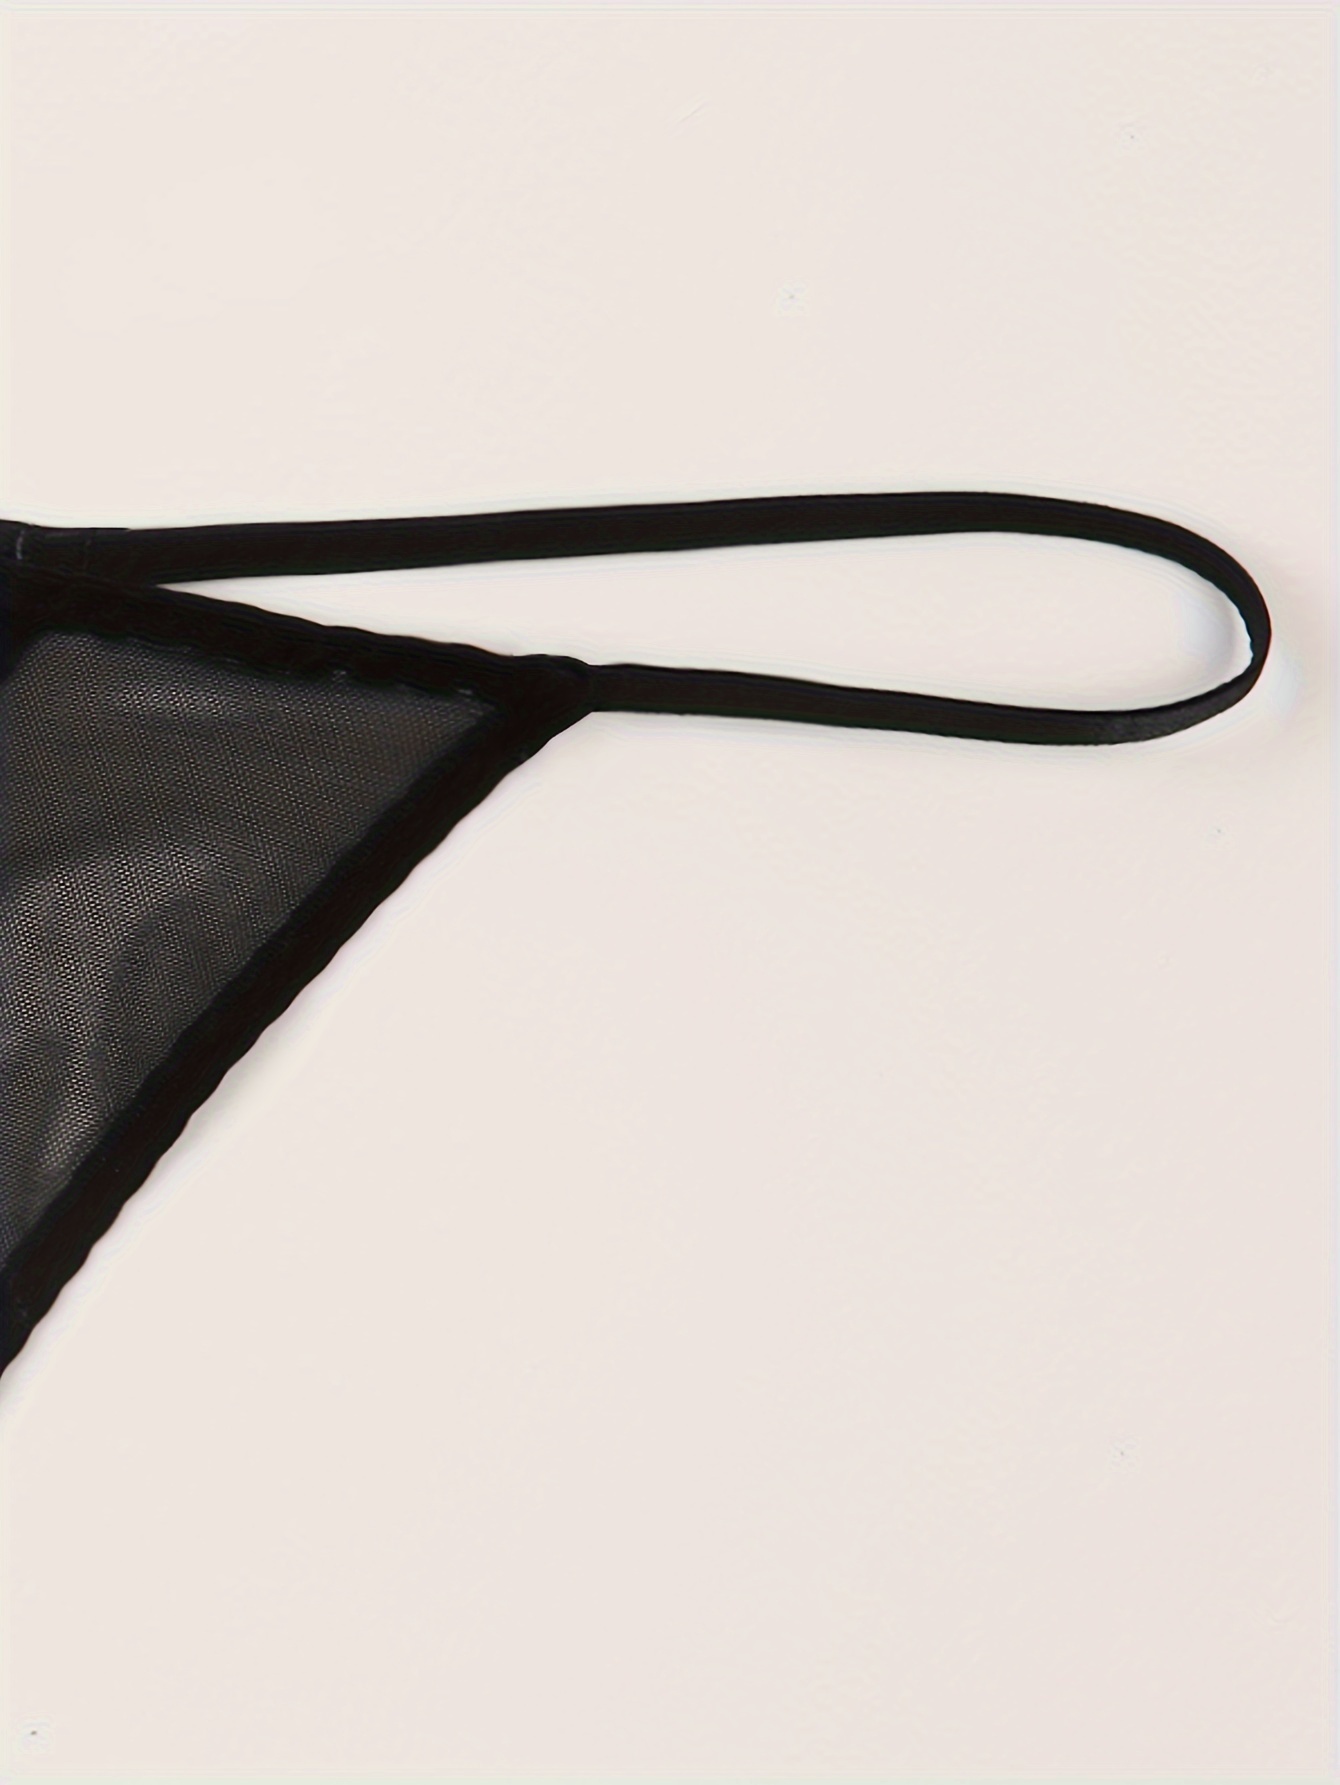 Varsbaby Women's Sheer Panties Thongs Mesh G-Strings Low Rise Brief  Underwear, 3-Pack : : Clothing, Shoes & Accessories